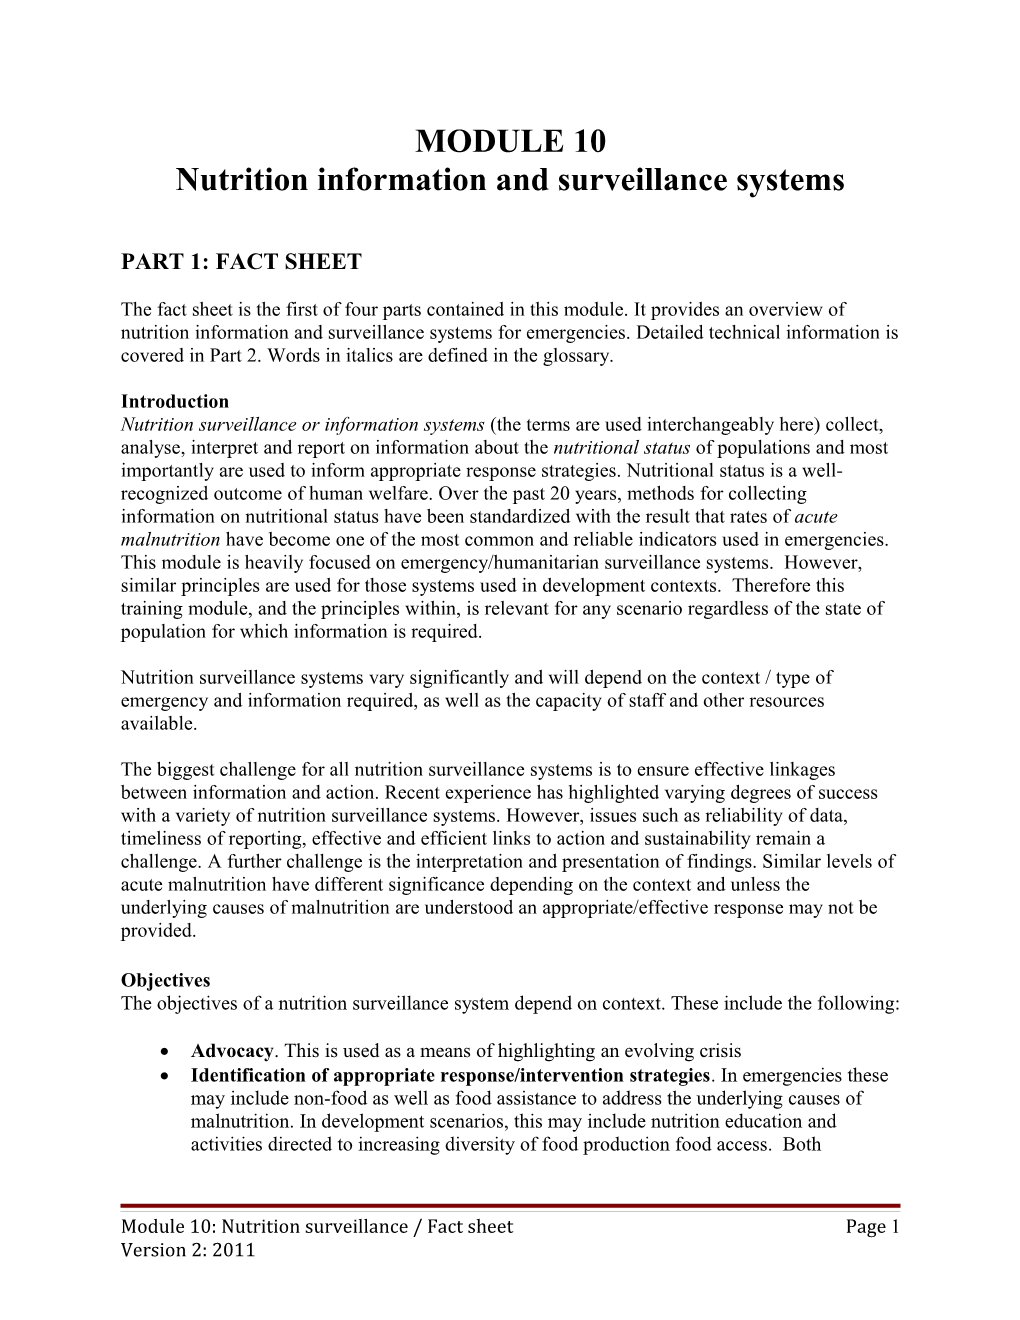 Module 11 Nutrition Surveillance P2